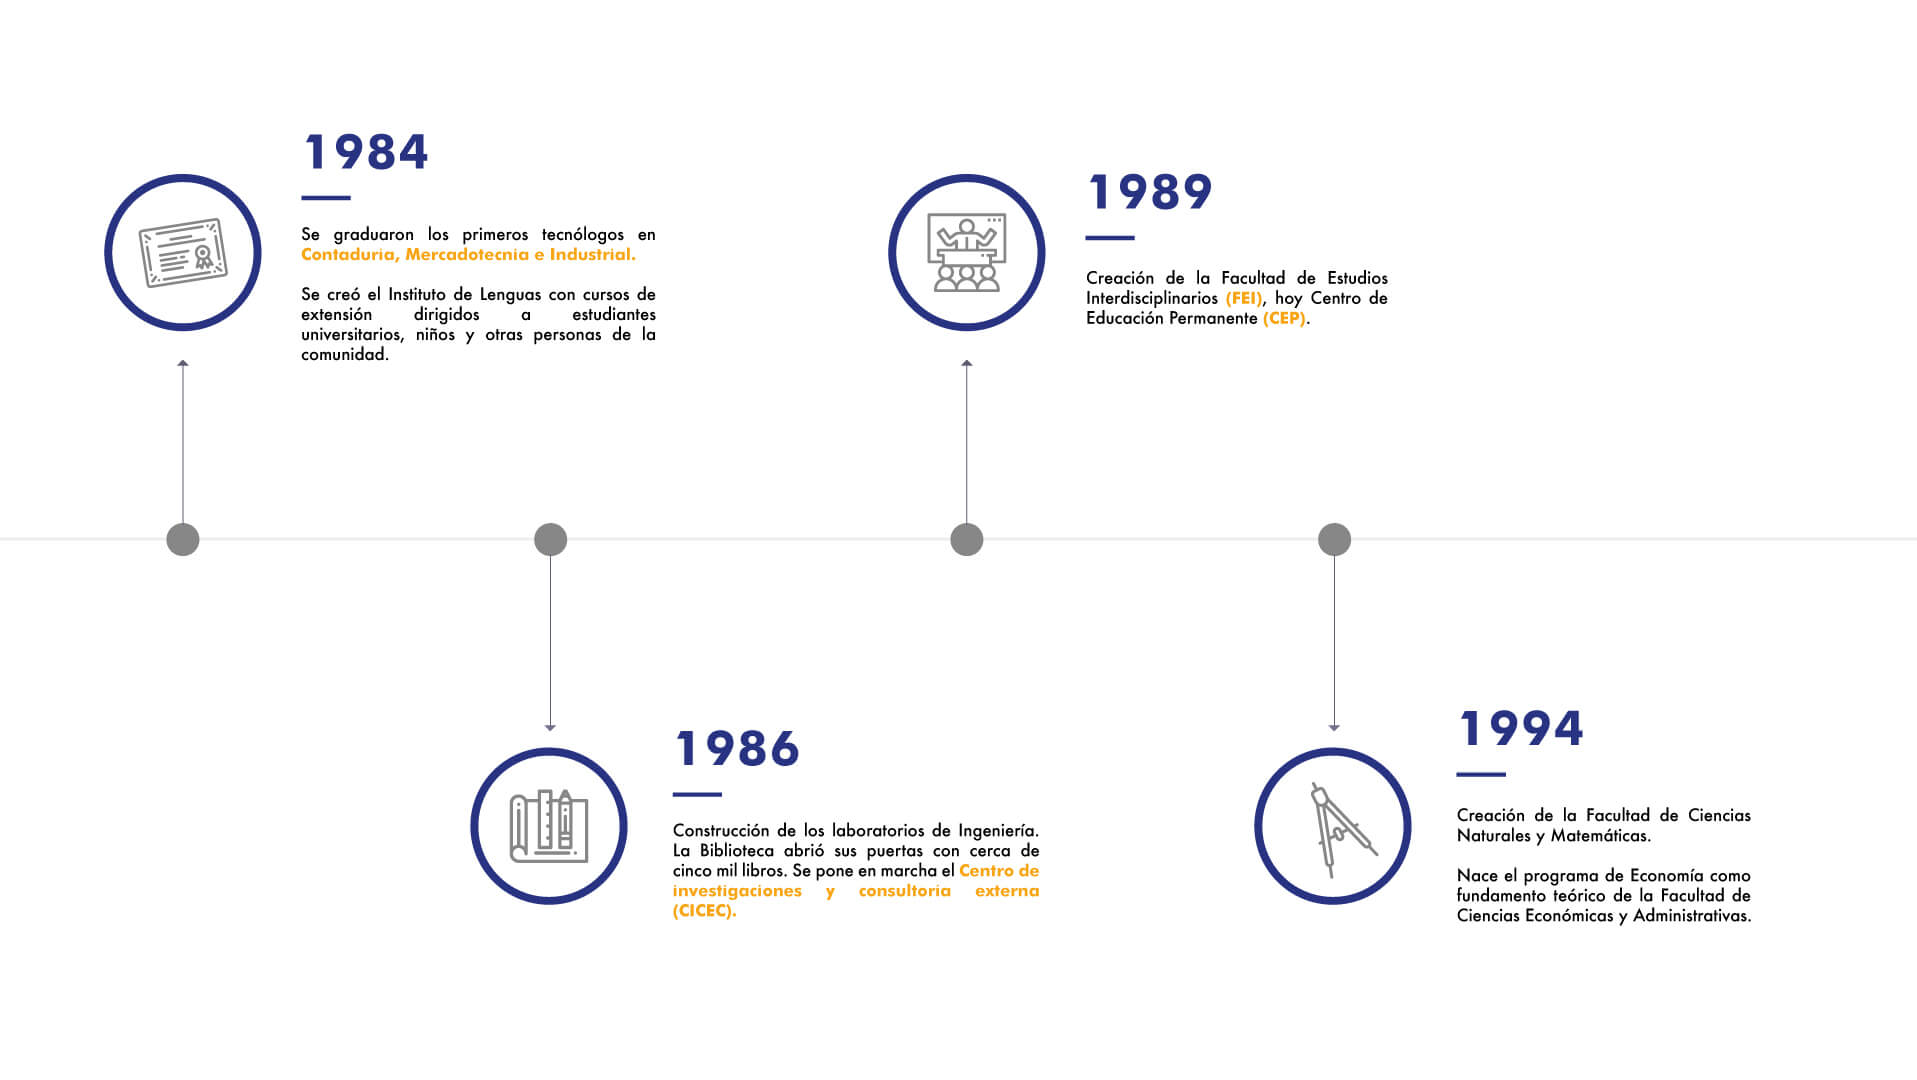 Diapositiva 2. Imagen sobre los acontecimientos de 1984, 1986.1989 y 1994 construcción de laboratorios y apertura de la biblioteca